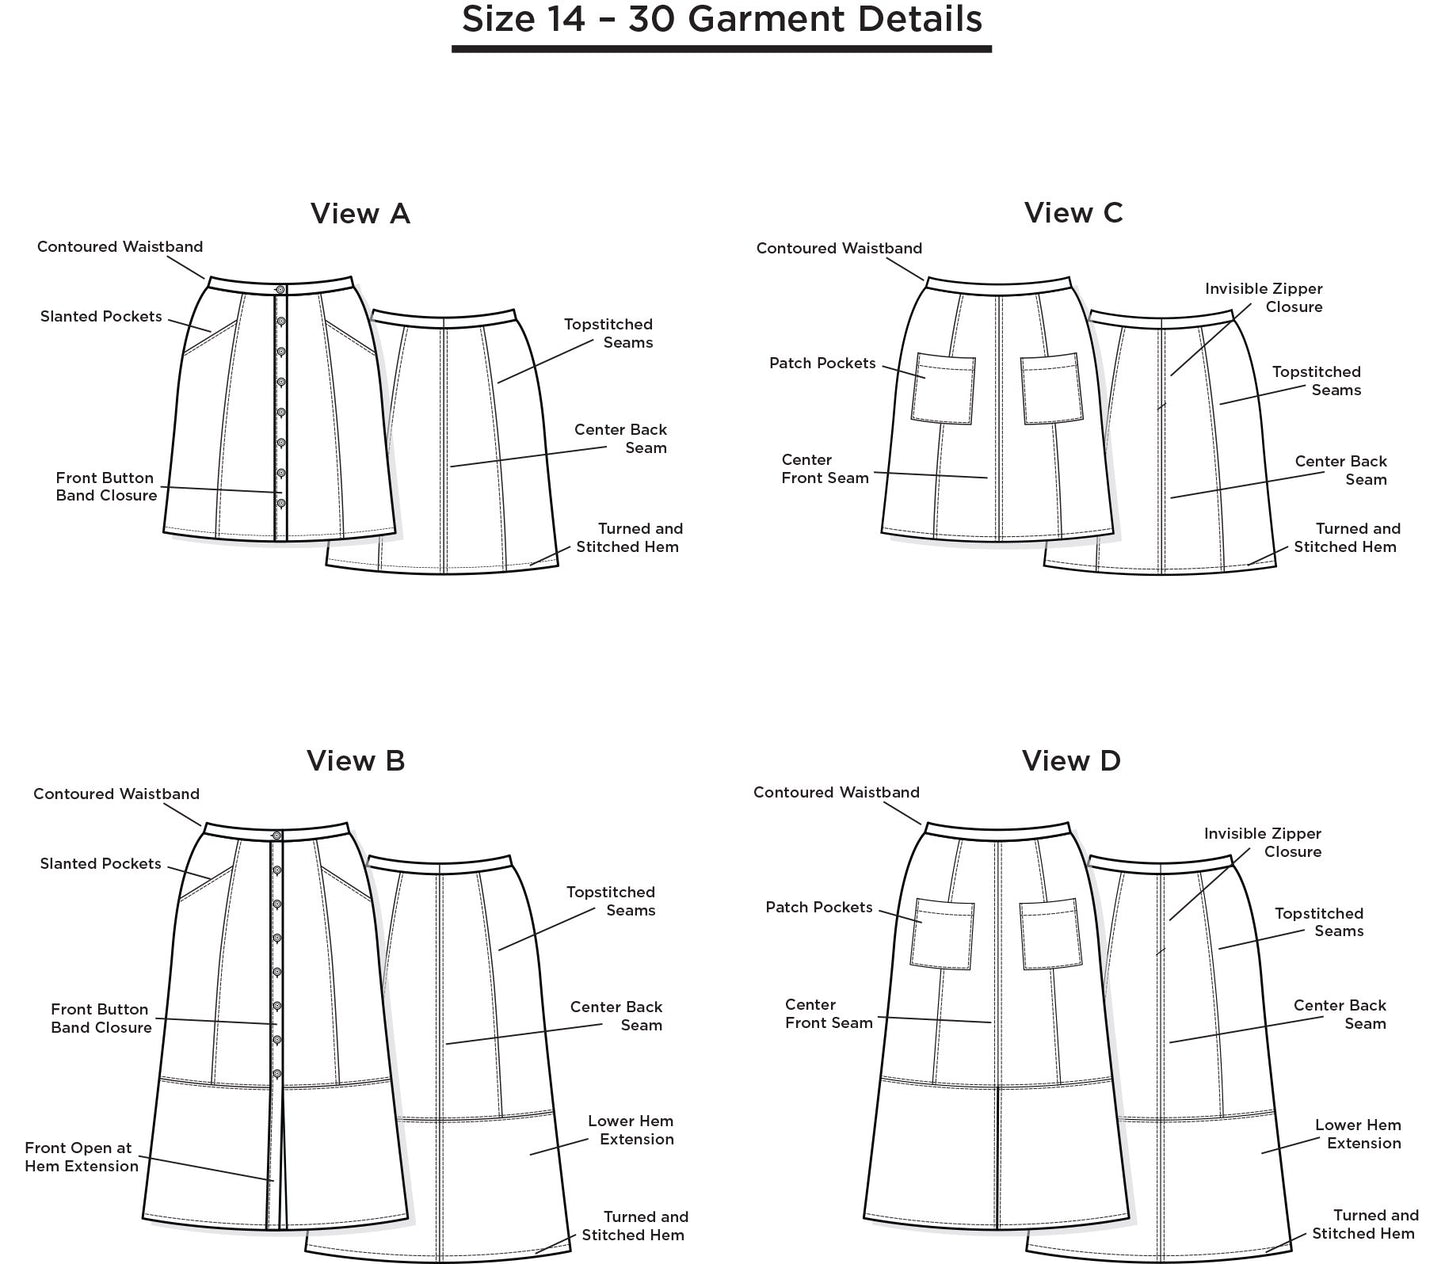 Reed Skirt Sizes 14 - 30 Pattern - Grainline Studio